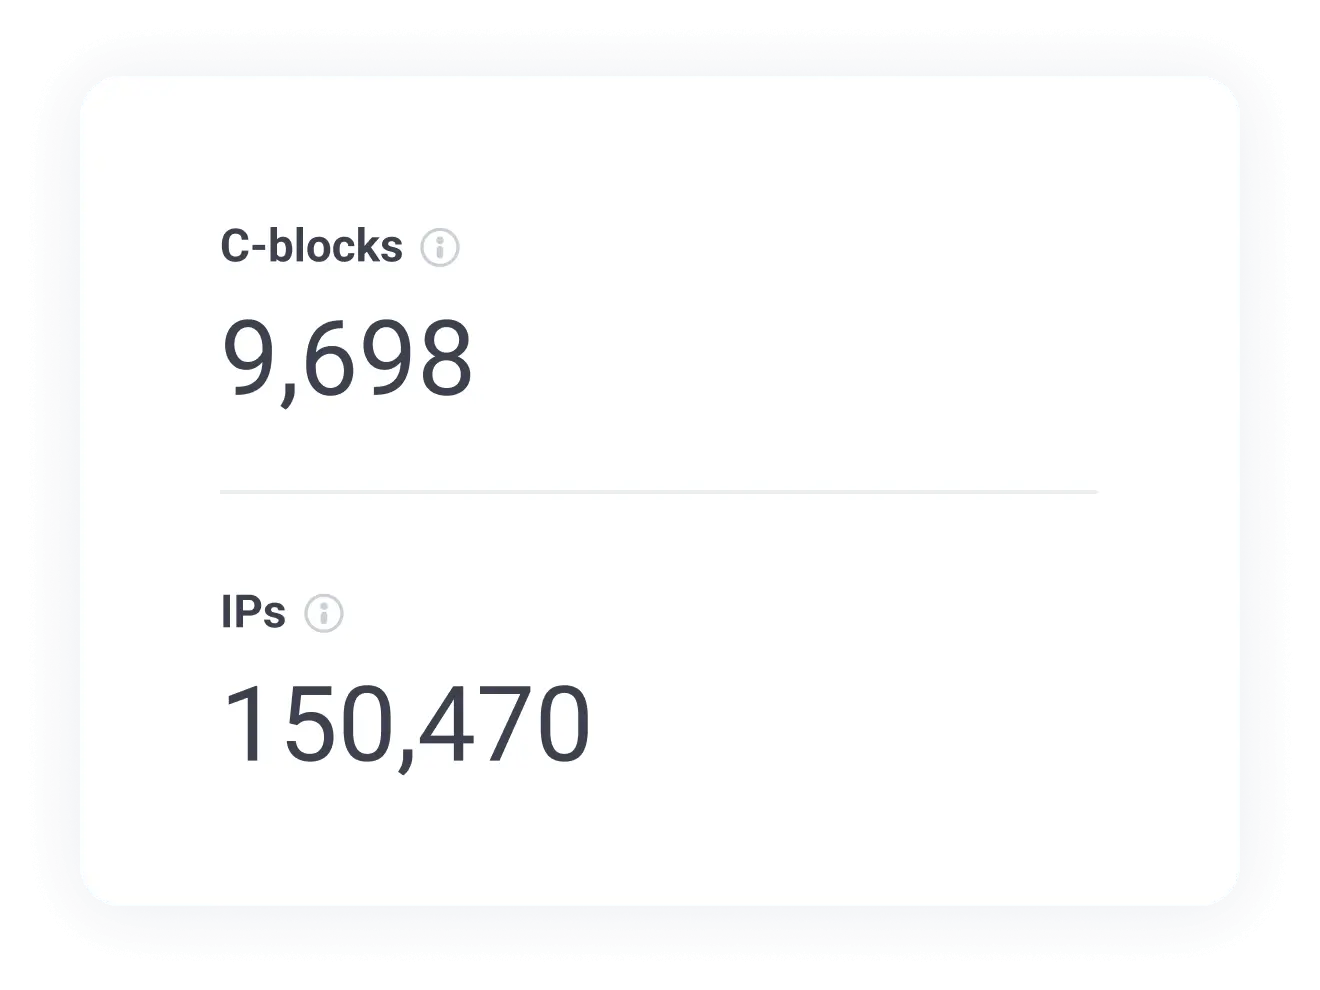 Verifique la cantidad de IP únicas y bloques C